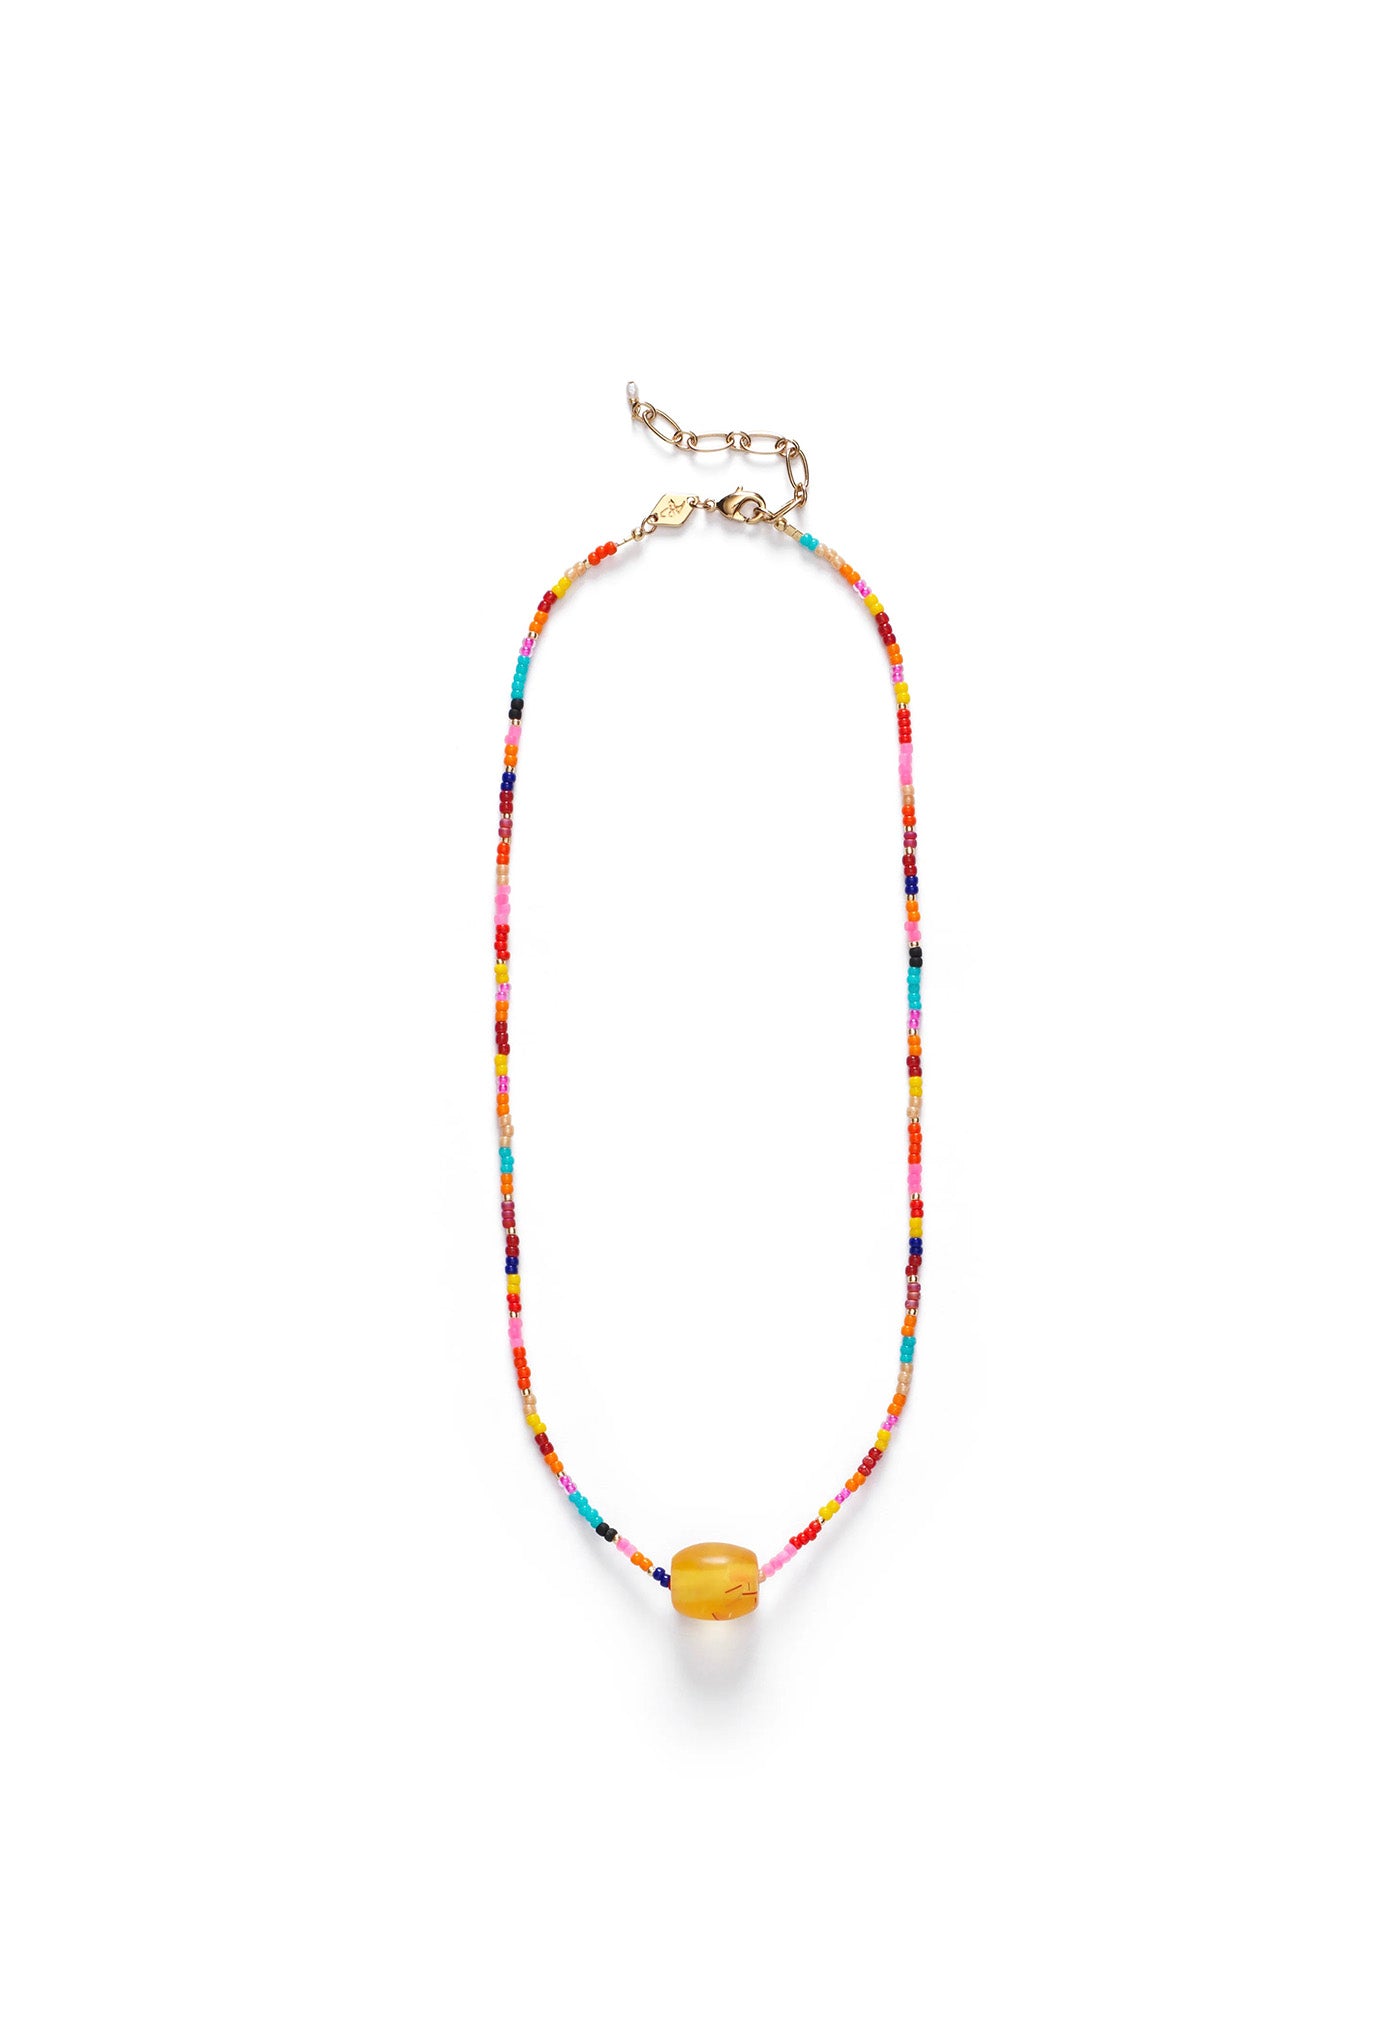 Sunny Eldorado Necklace sold by Angel Divine